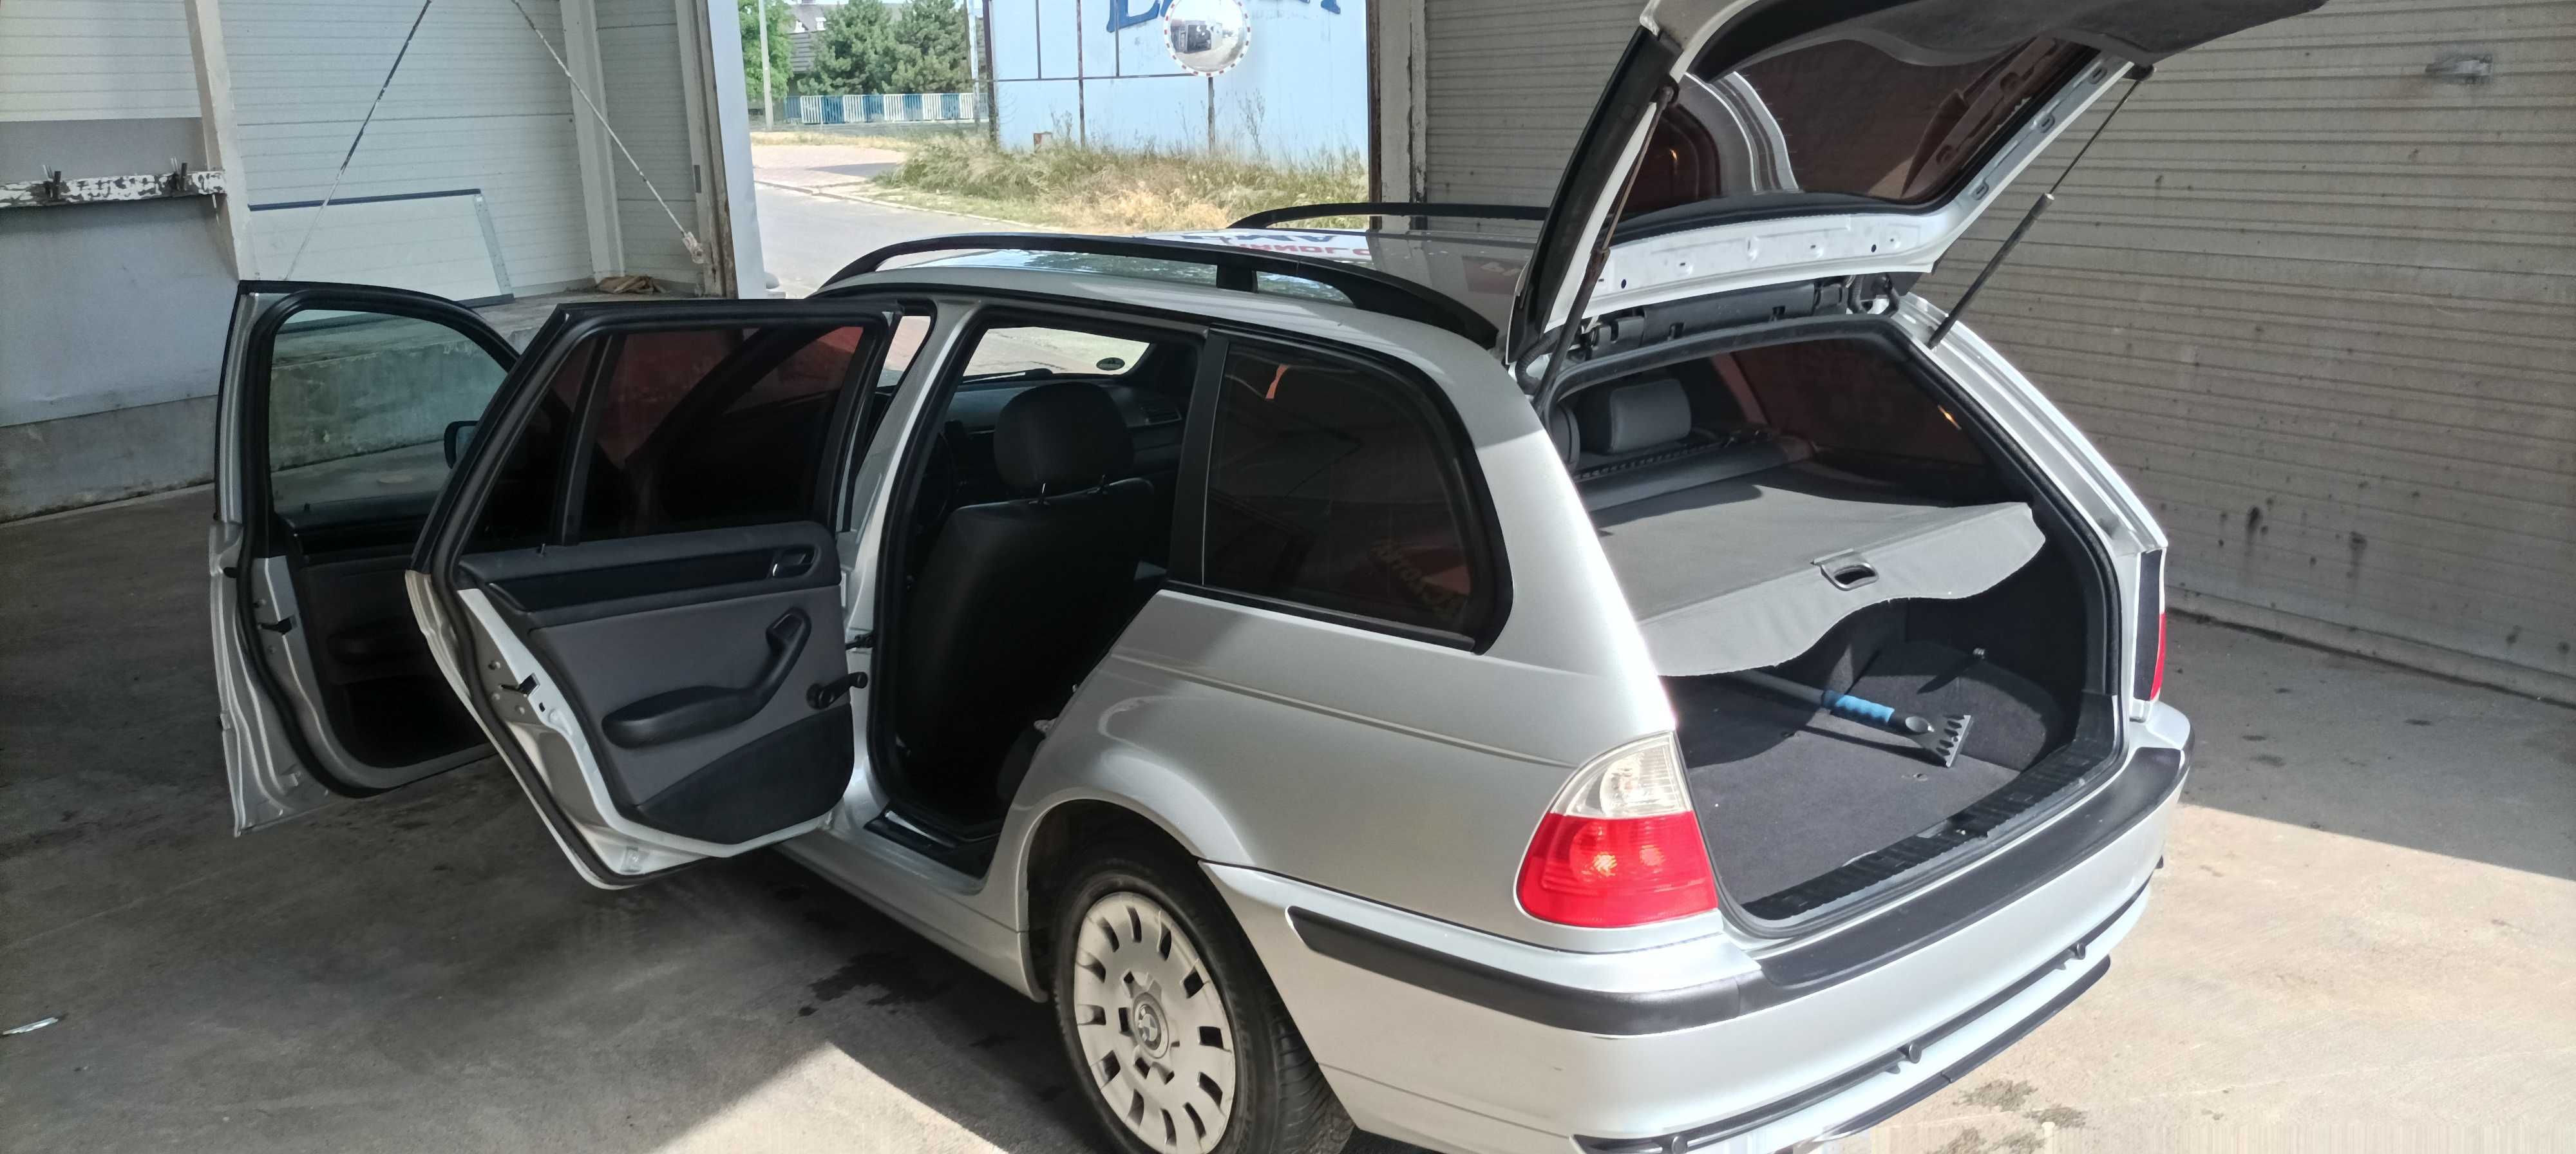 BMW E46 318i 2,0 kombi zadbane bez napraw